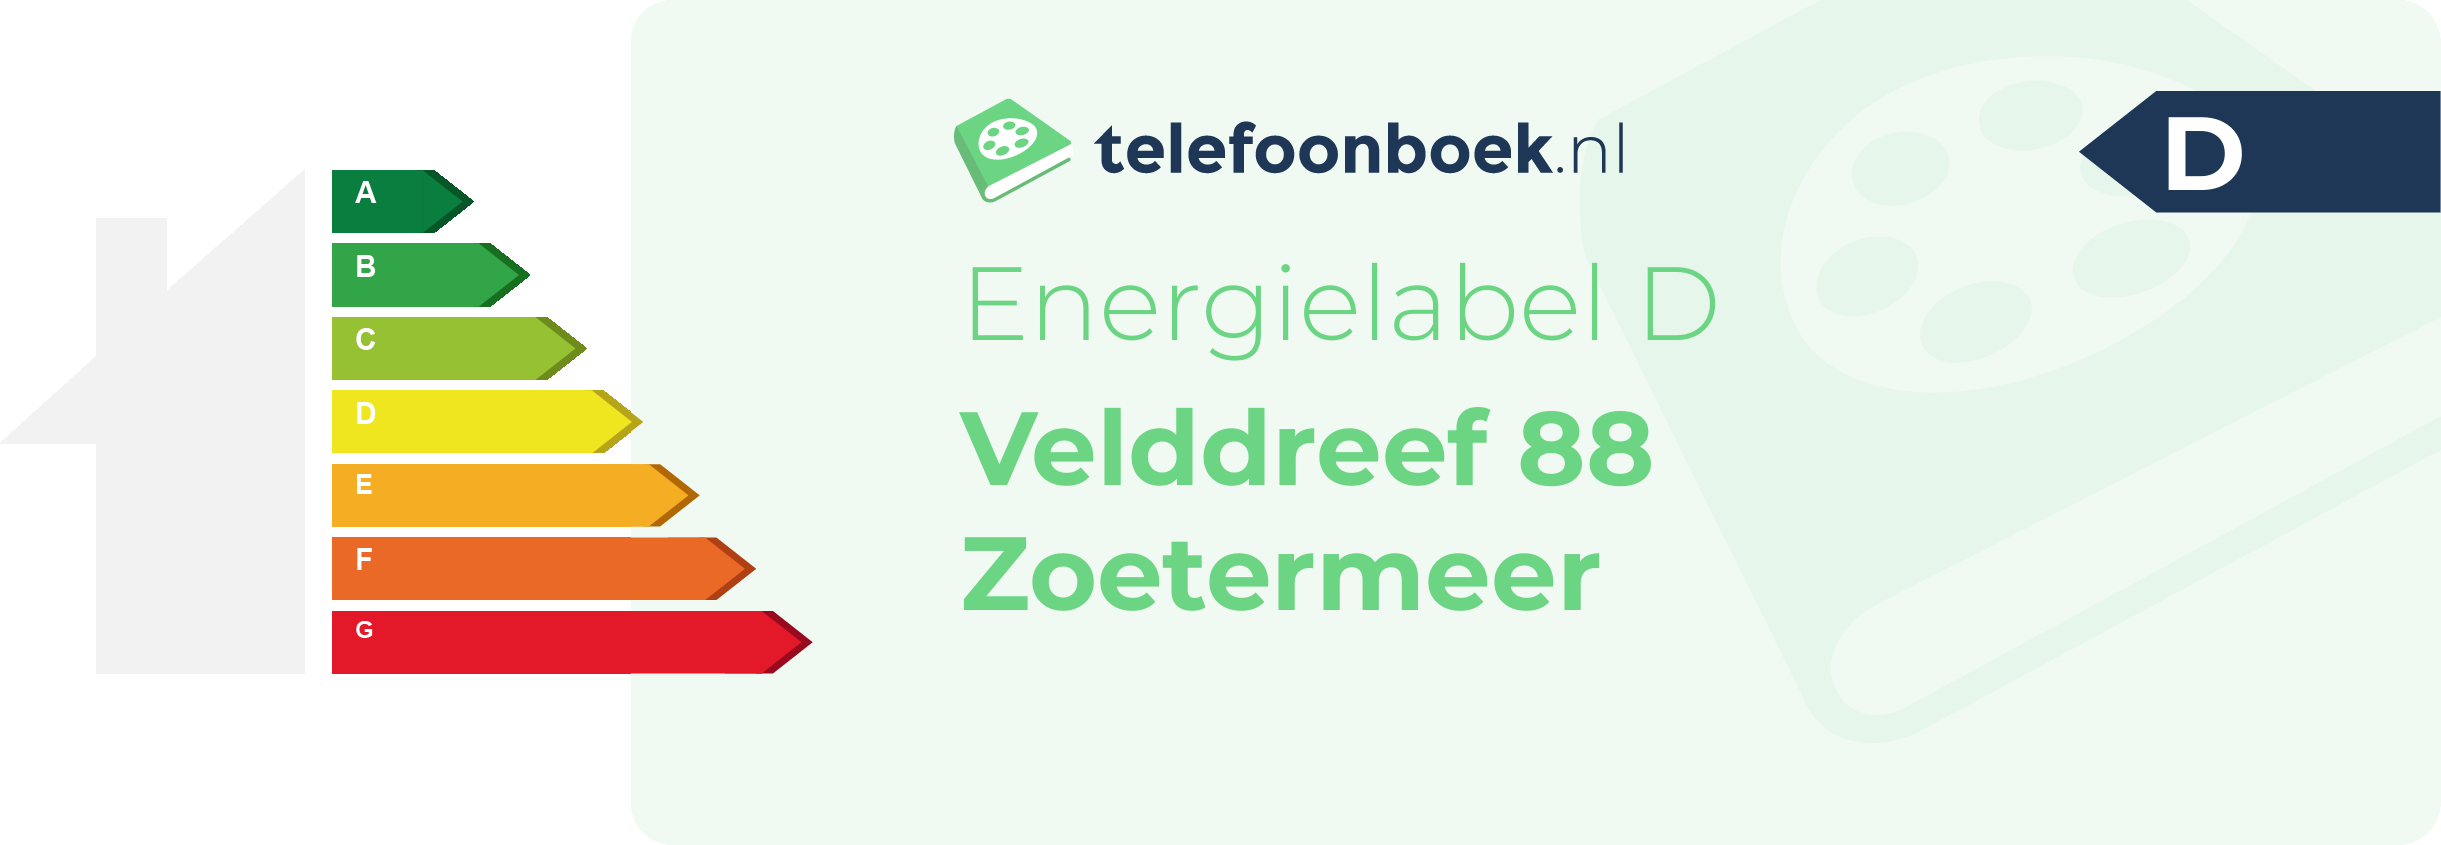 Energielabel Velddreef 88 Zoetermeer